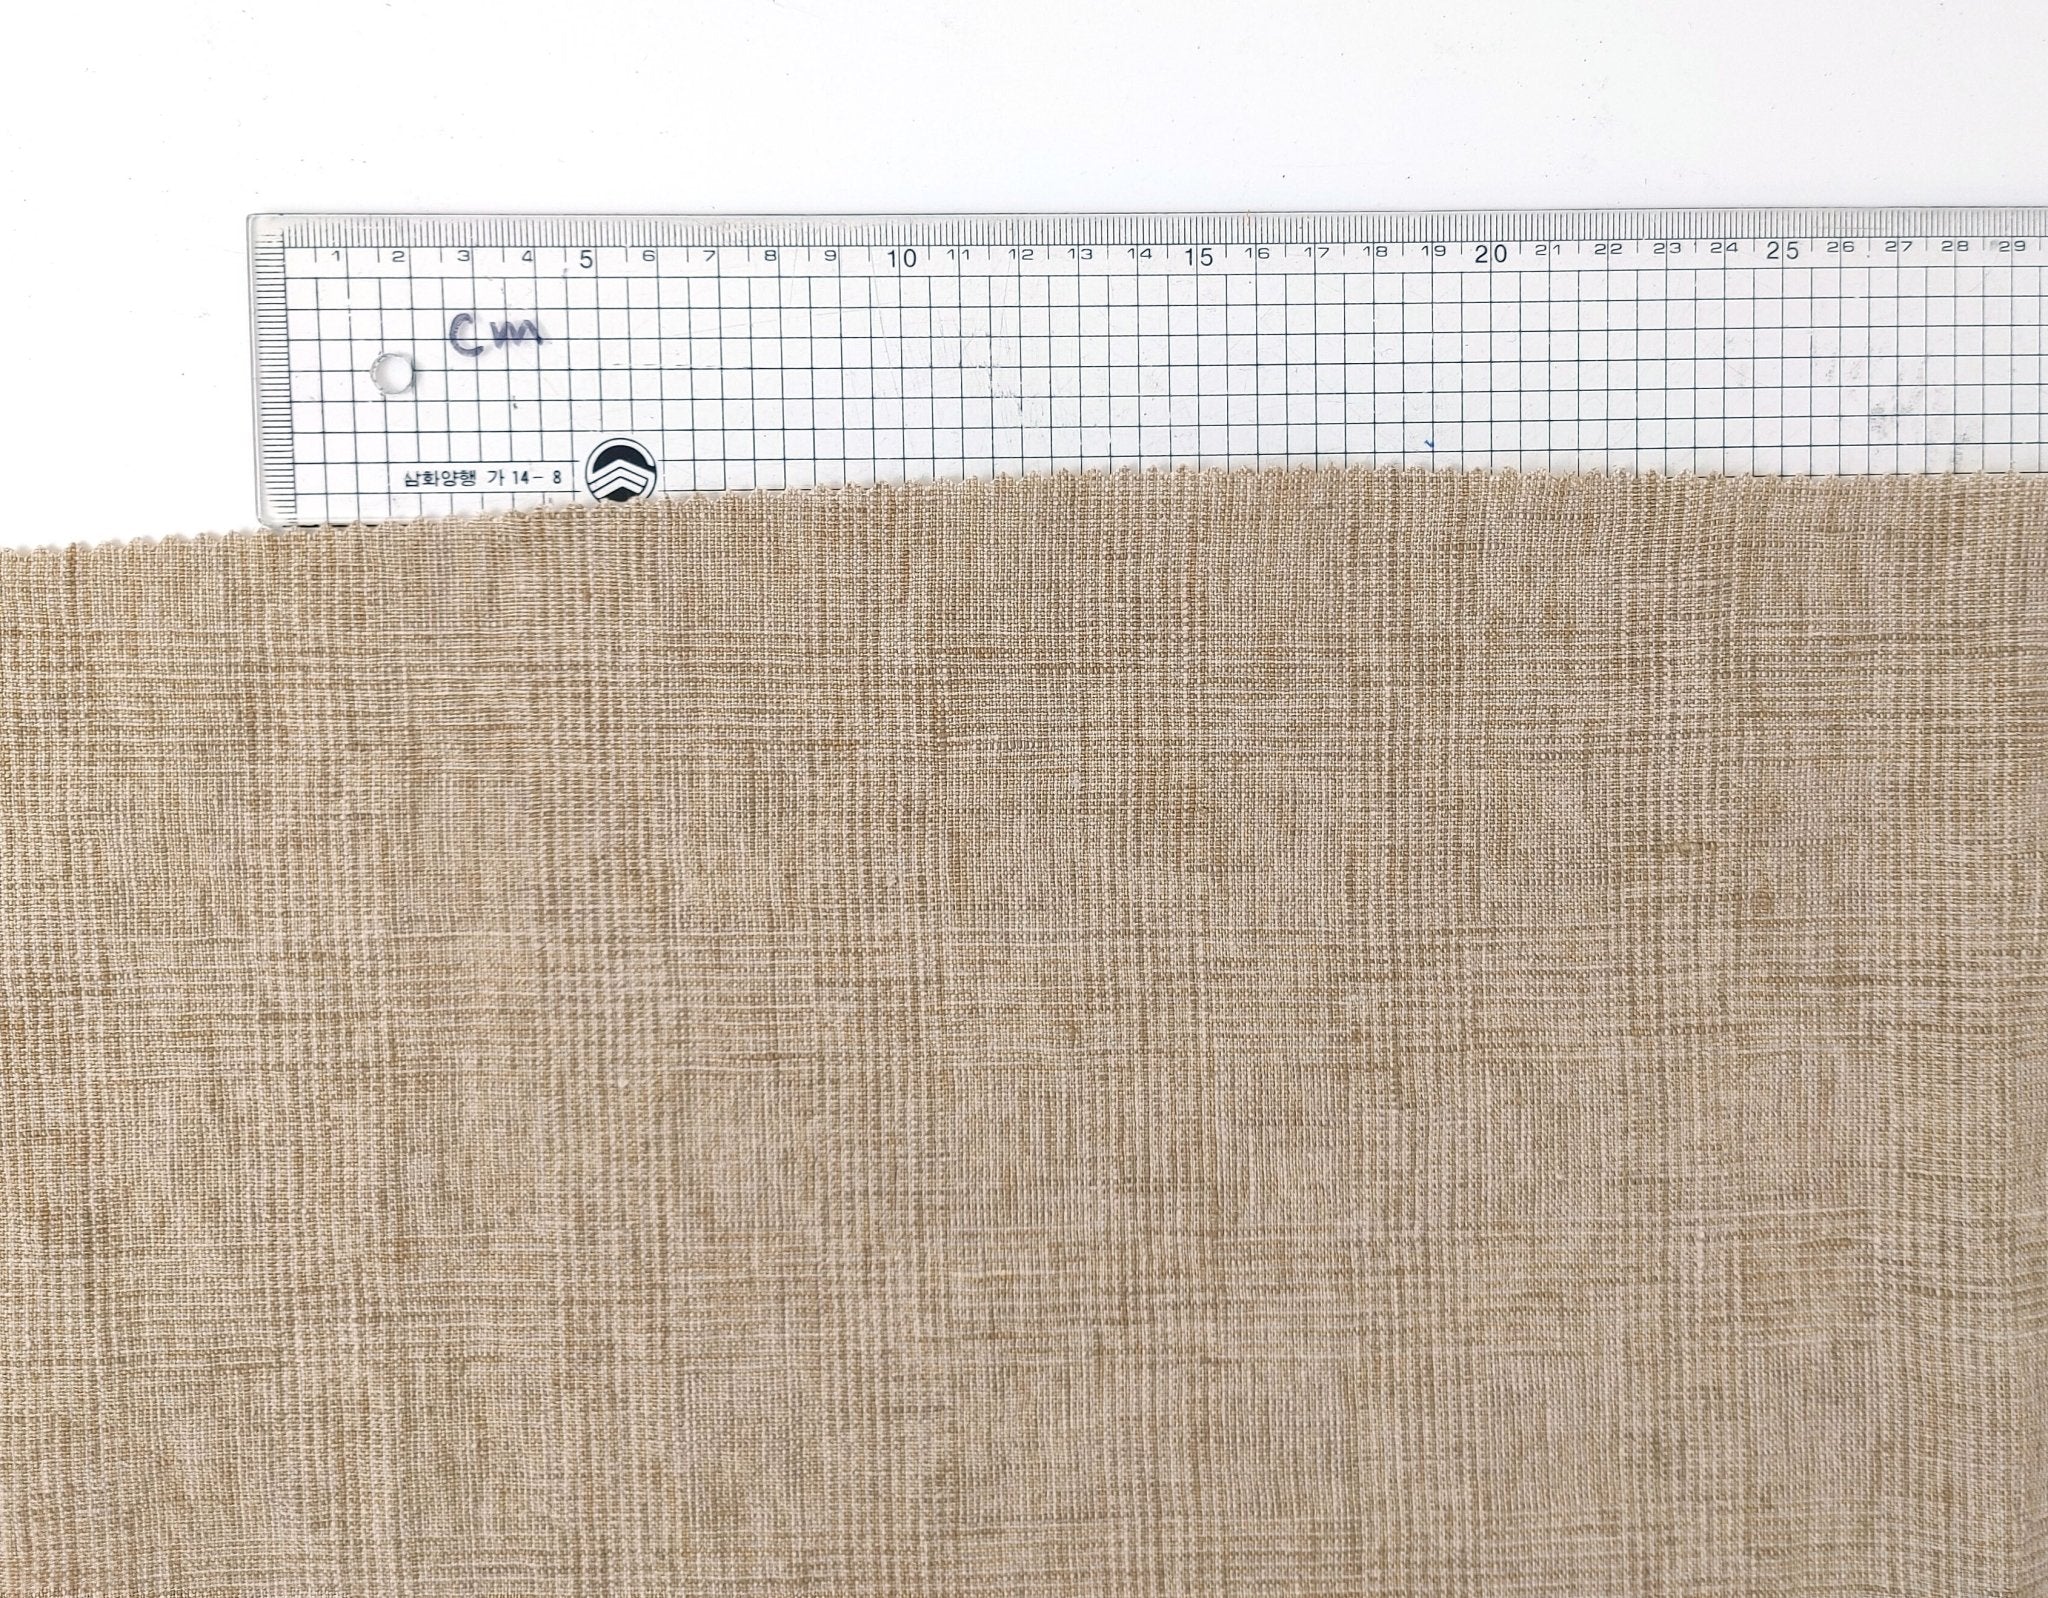 Beige Subtle Glen Plaid Fabric in 100% Linen, Medium-Heavy Weight 7375 - The Linen Lab - Beige